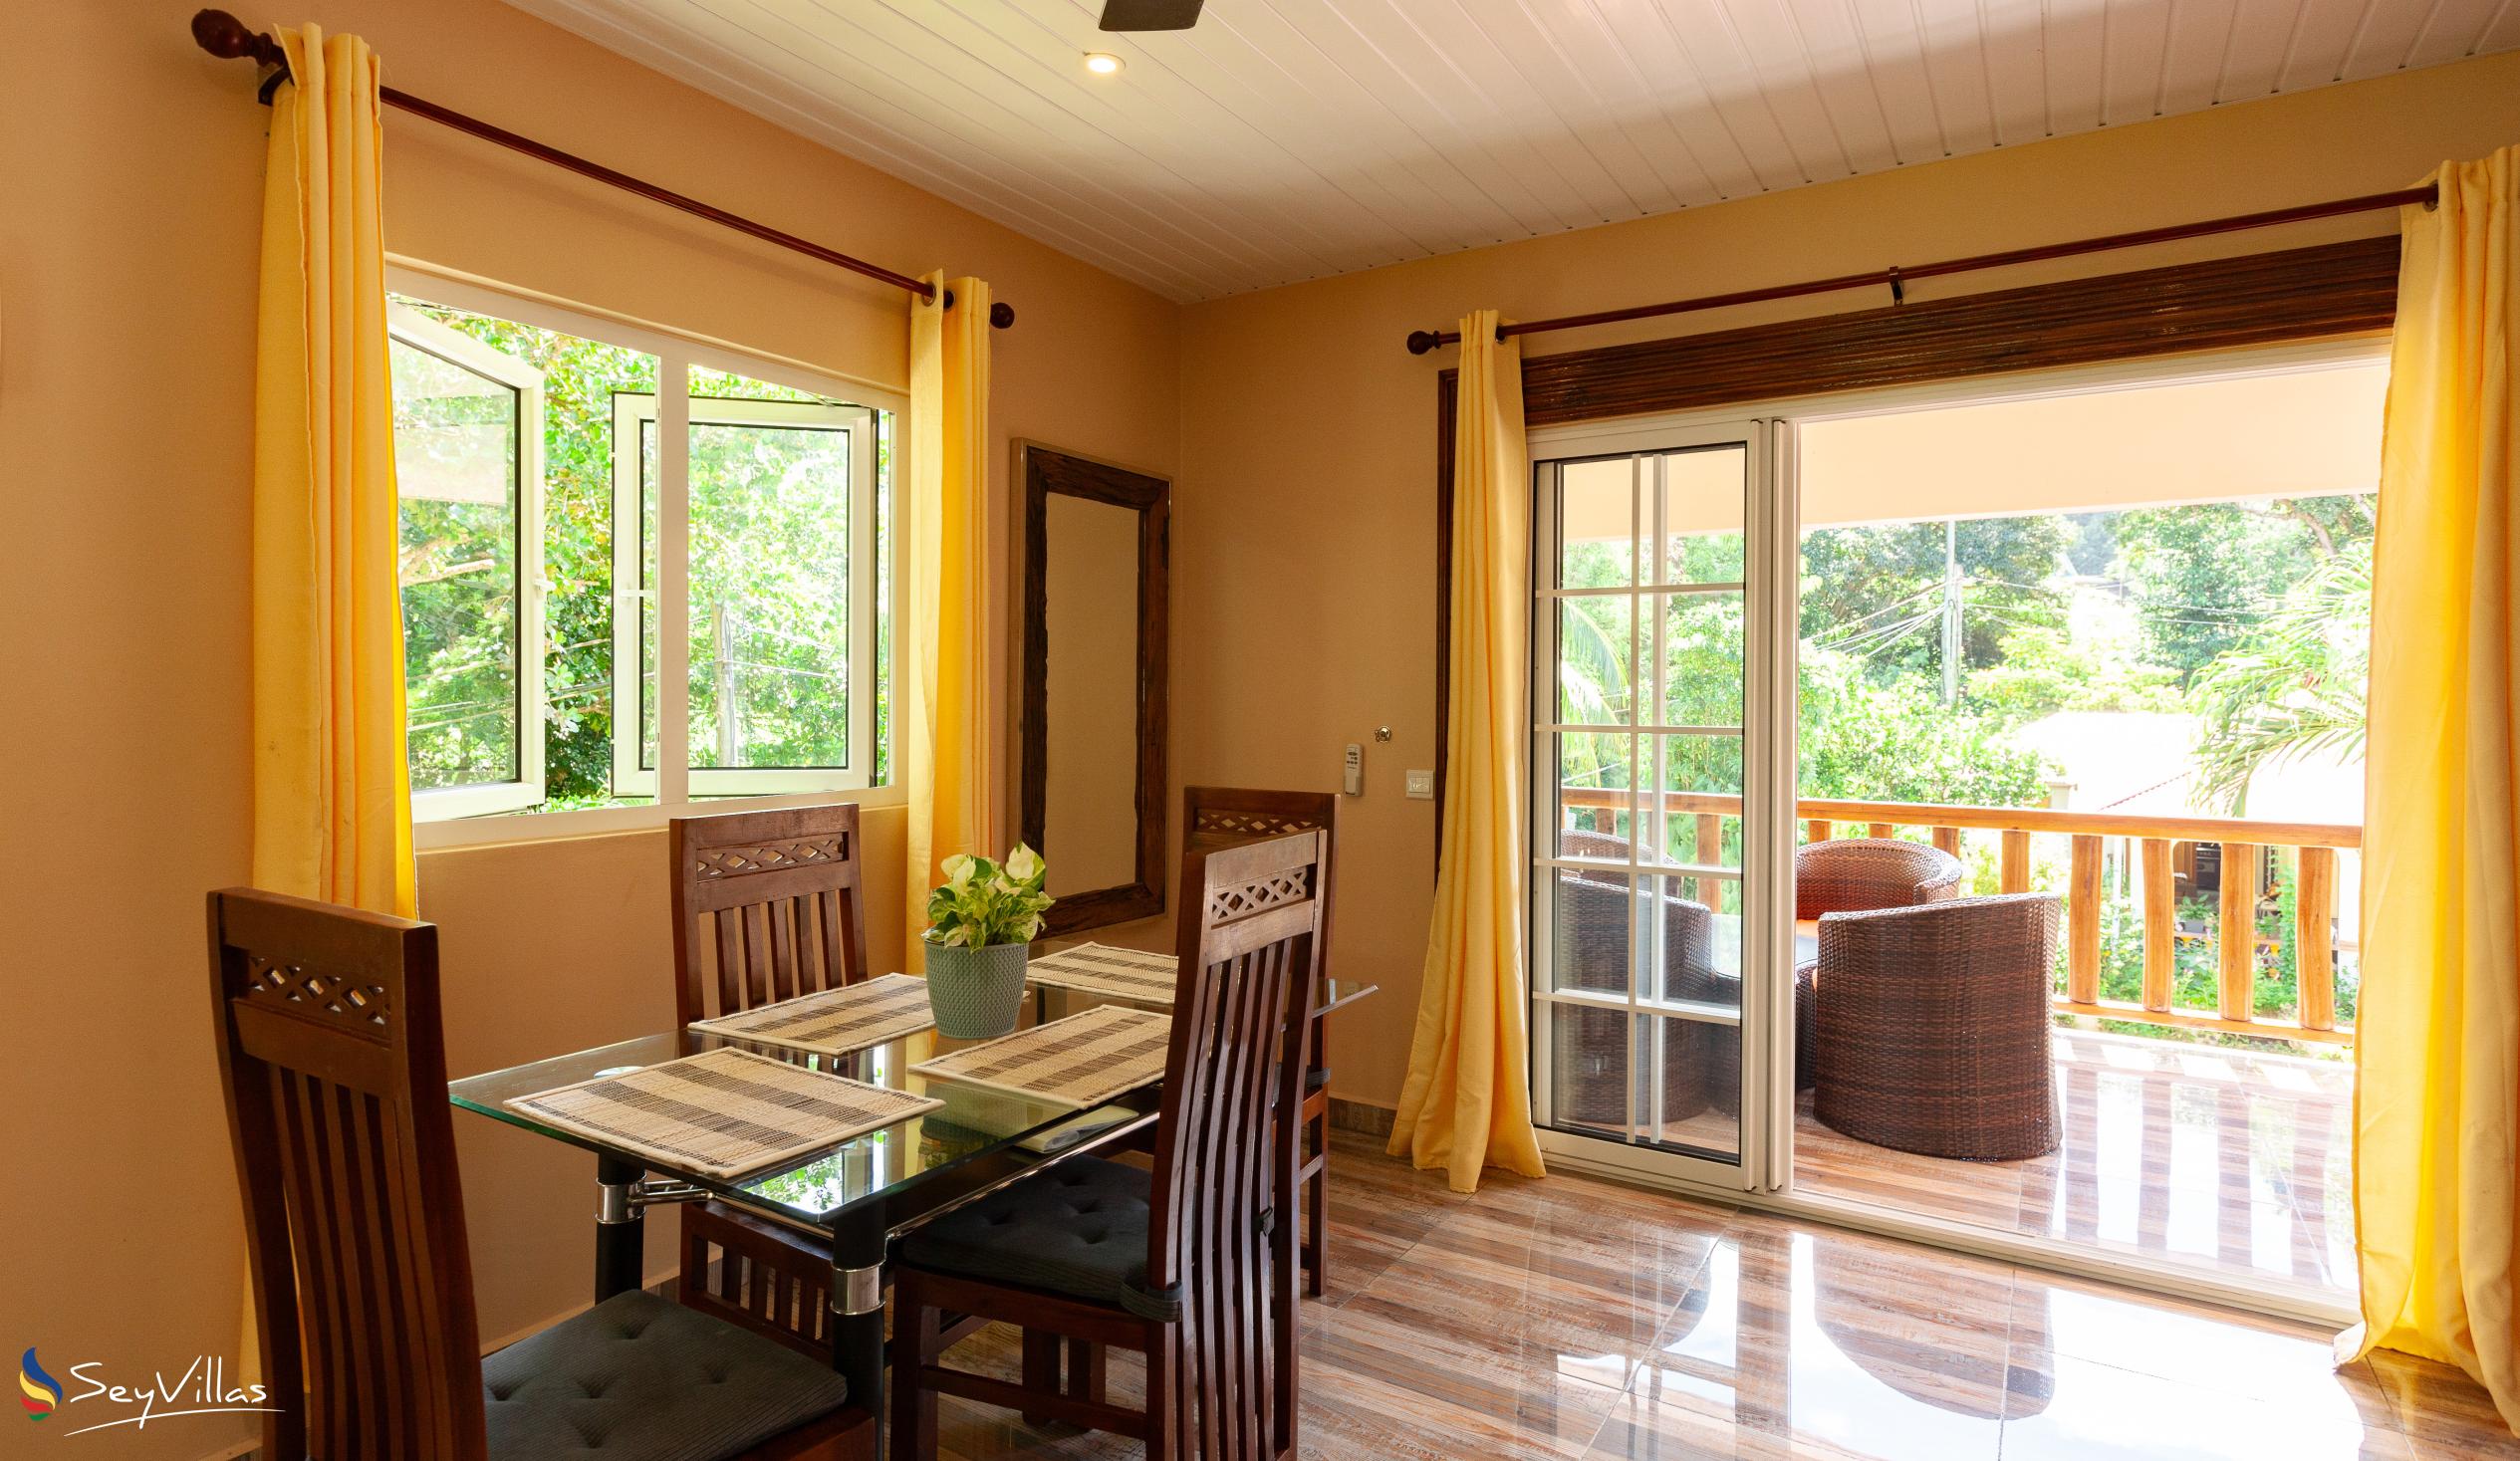 Foto 79: Chloe's Cottage - Appartamento familiare deluxe - La Digue (Seychelles)